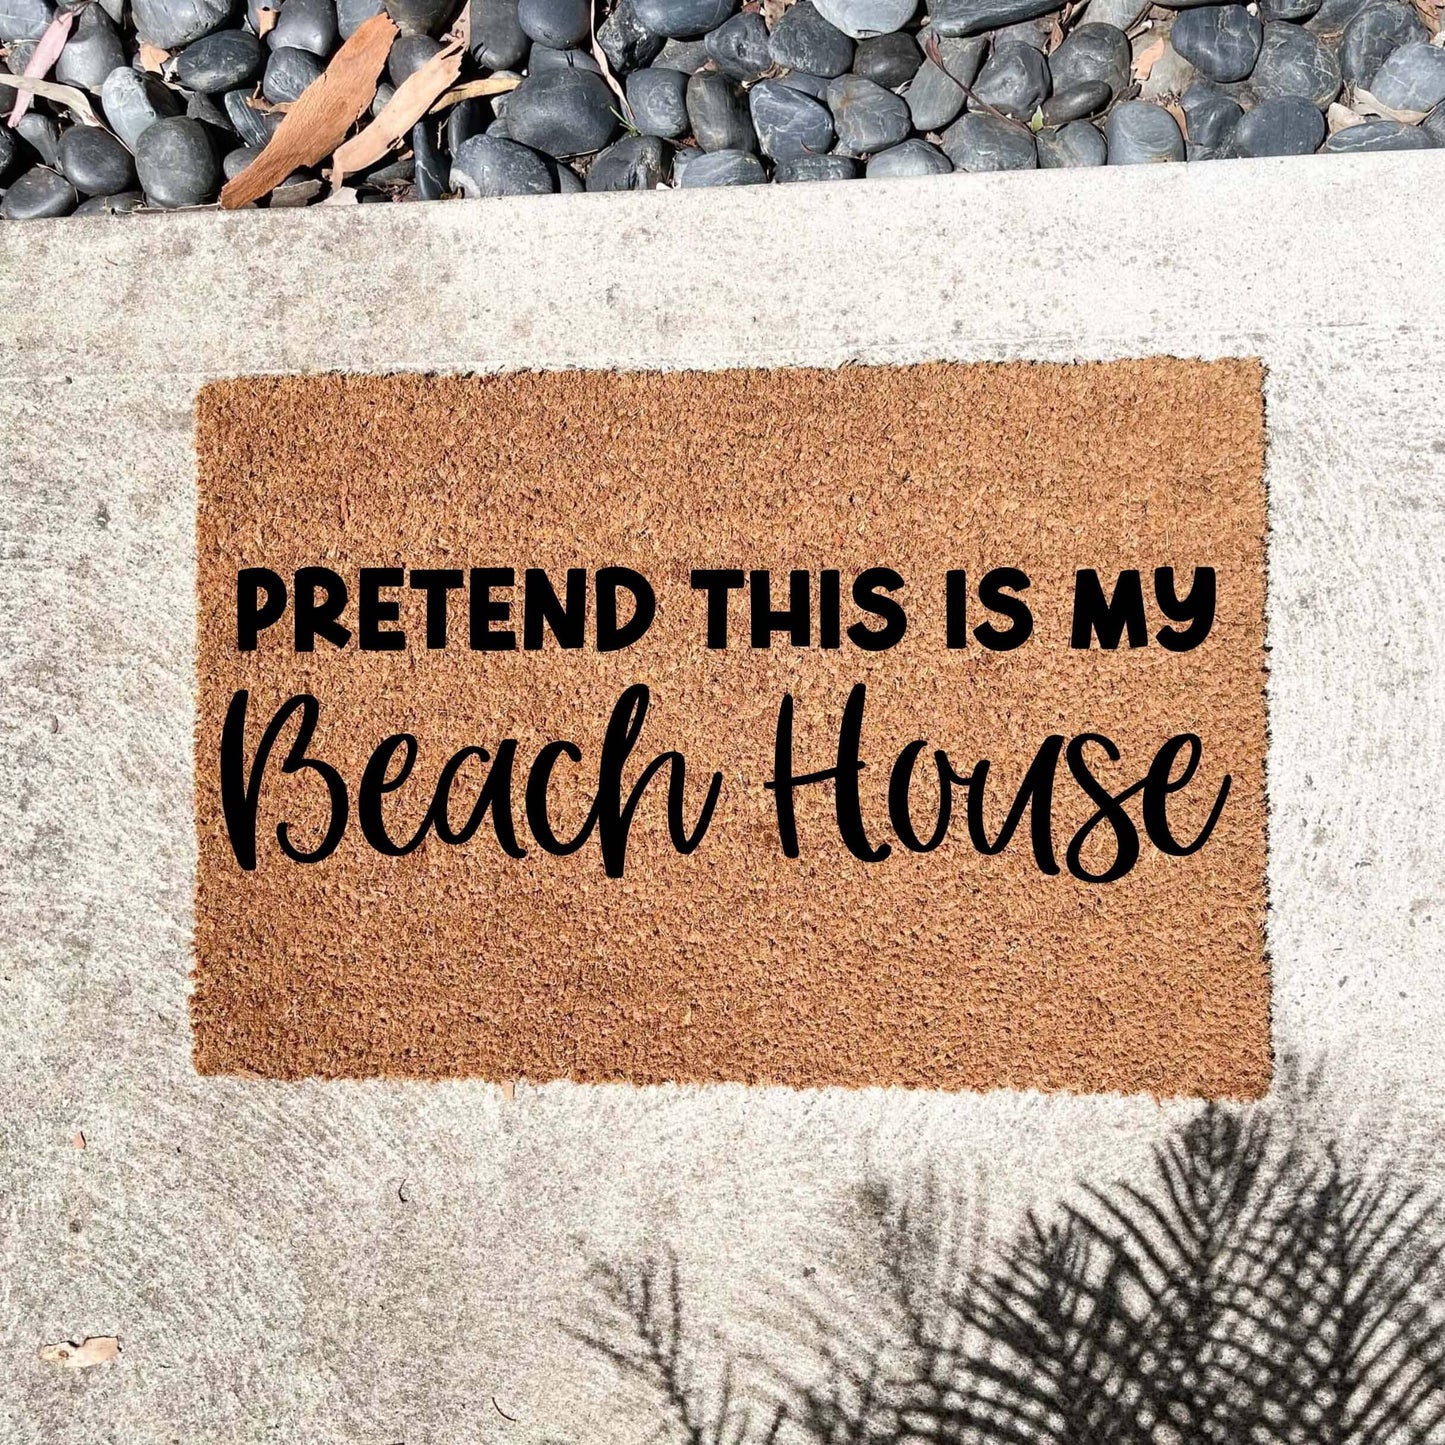 Pretend this is my Beach house doormat, custom doormat, personalised doormat, door mat